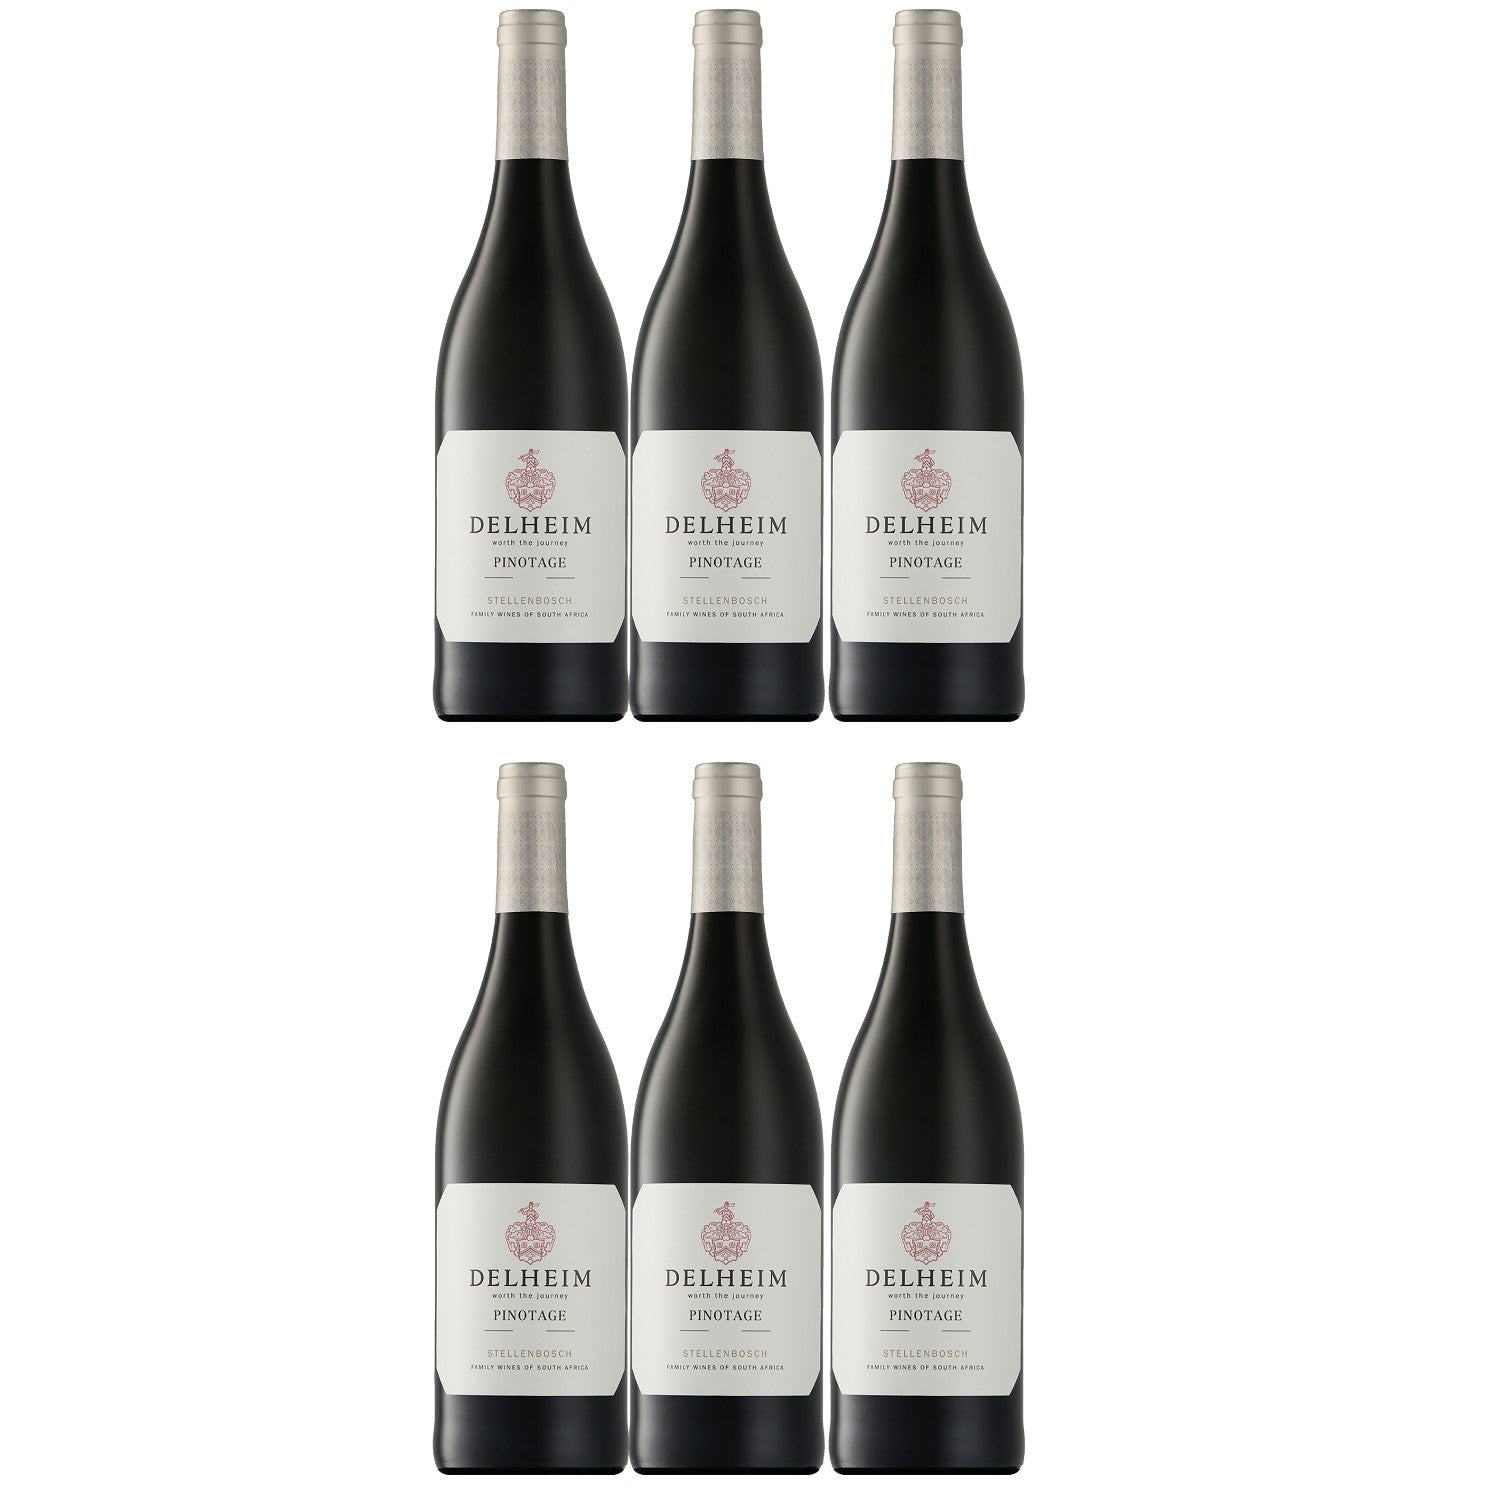 Delheim Pinotage Stellenbosch Rotwein südafrikanischer Wein trocken Südafrika (6 x 0.75l) - Versanel -